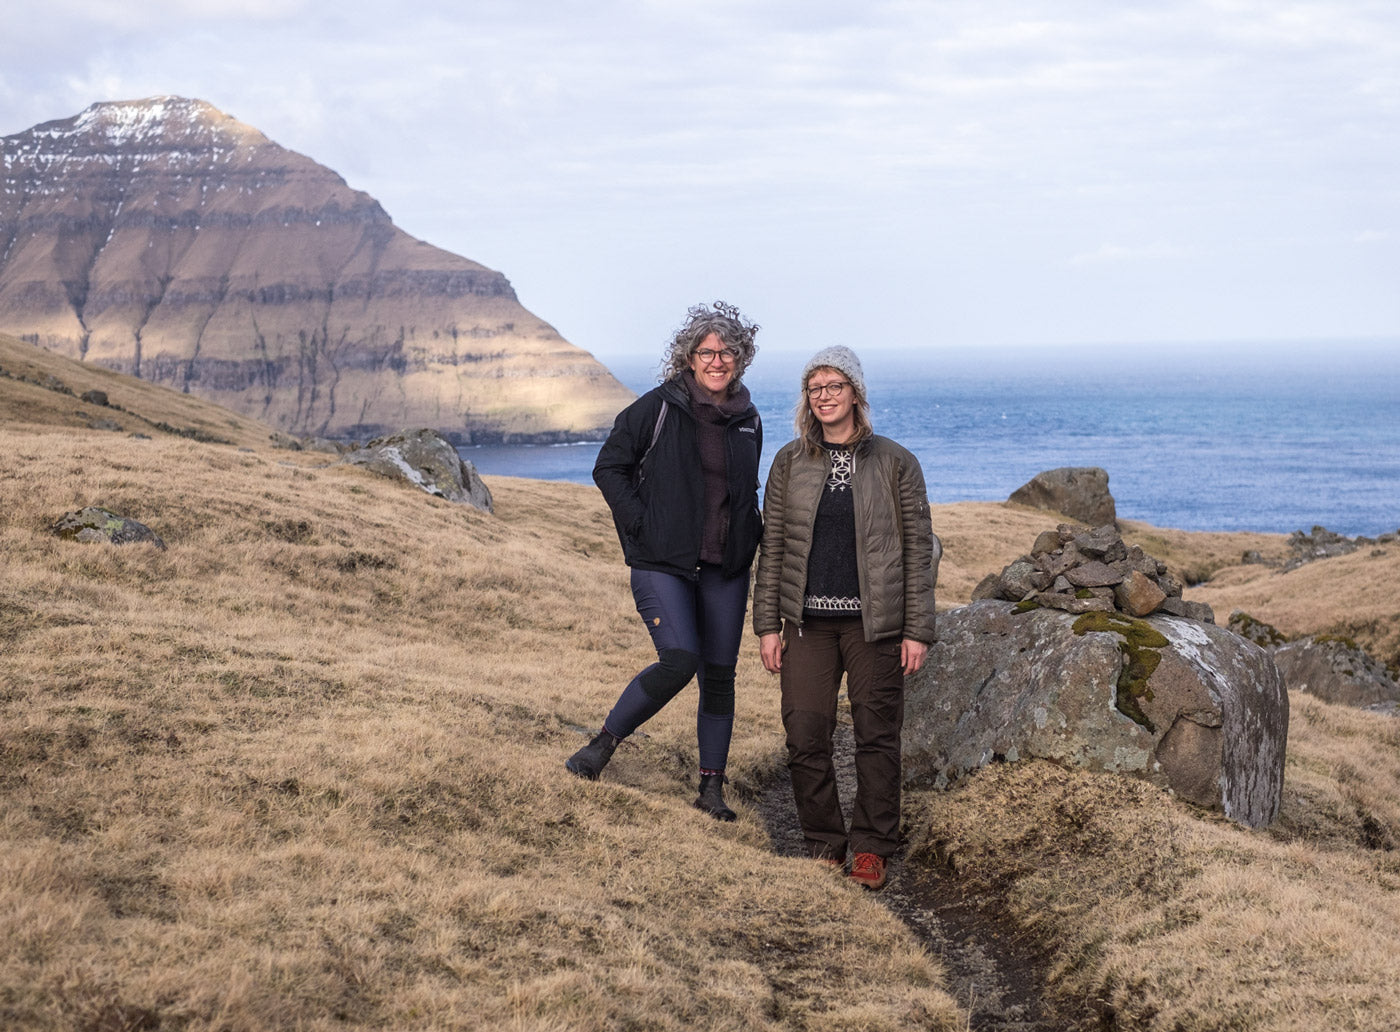 Jaime and Amber hiking in Faroe